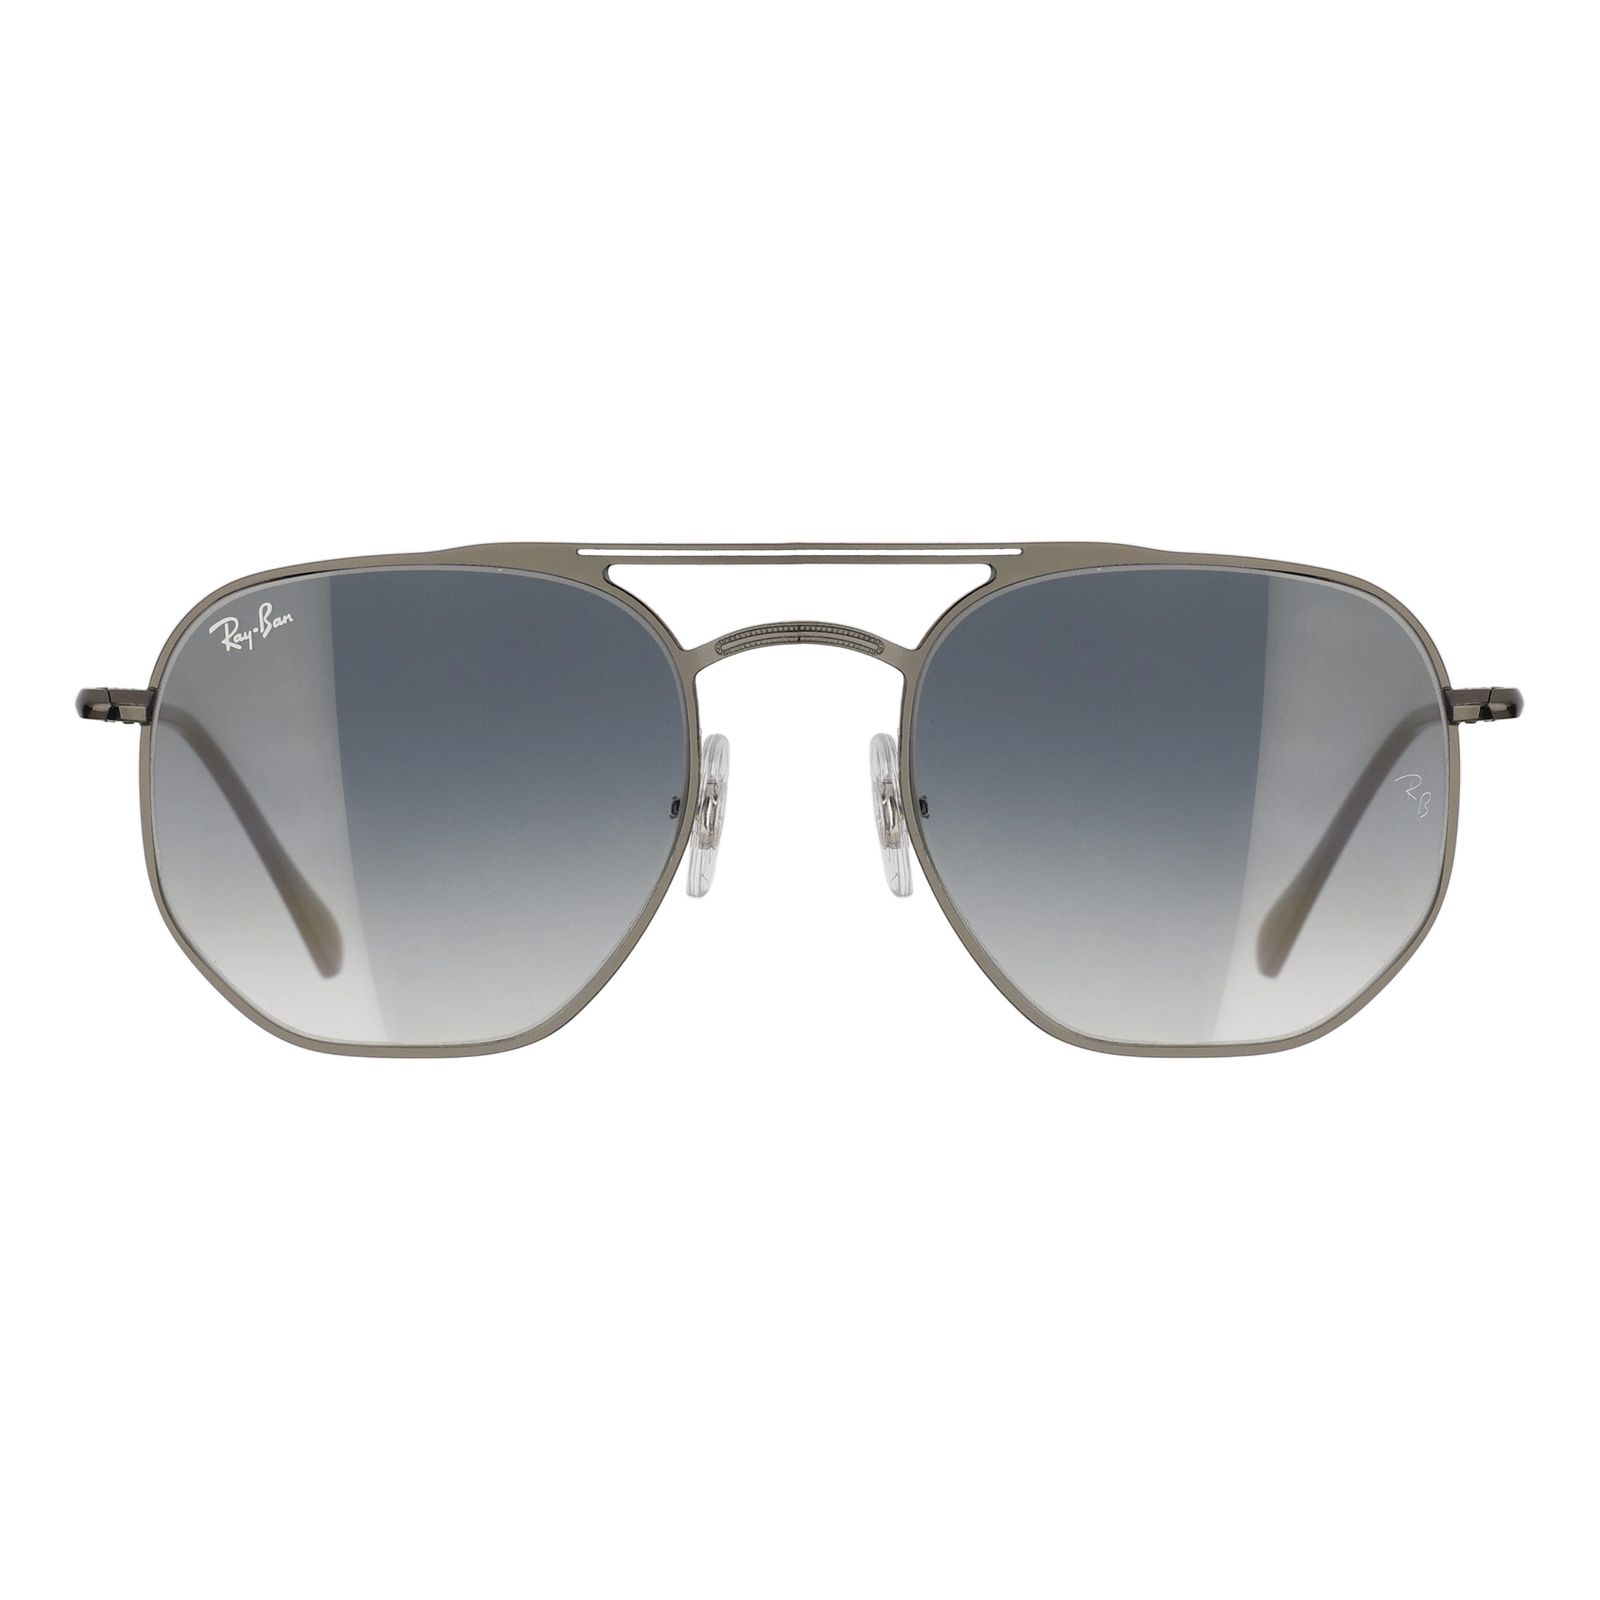 عینک آفتابی ری بن مدل RB3609-9143/32 -  - 1